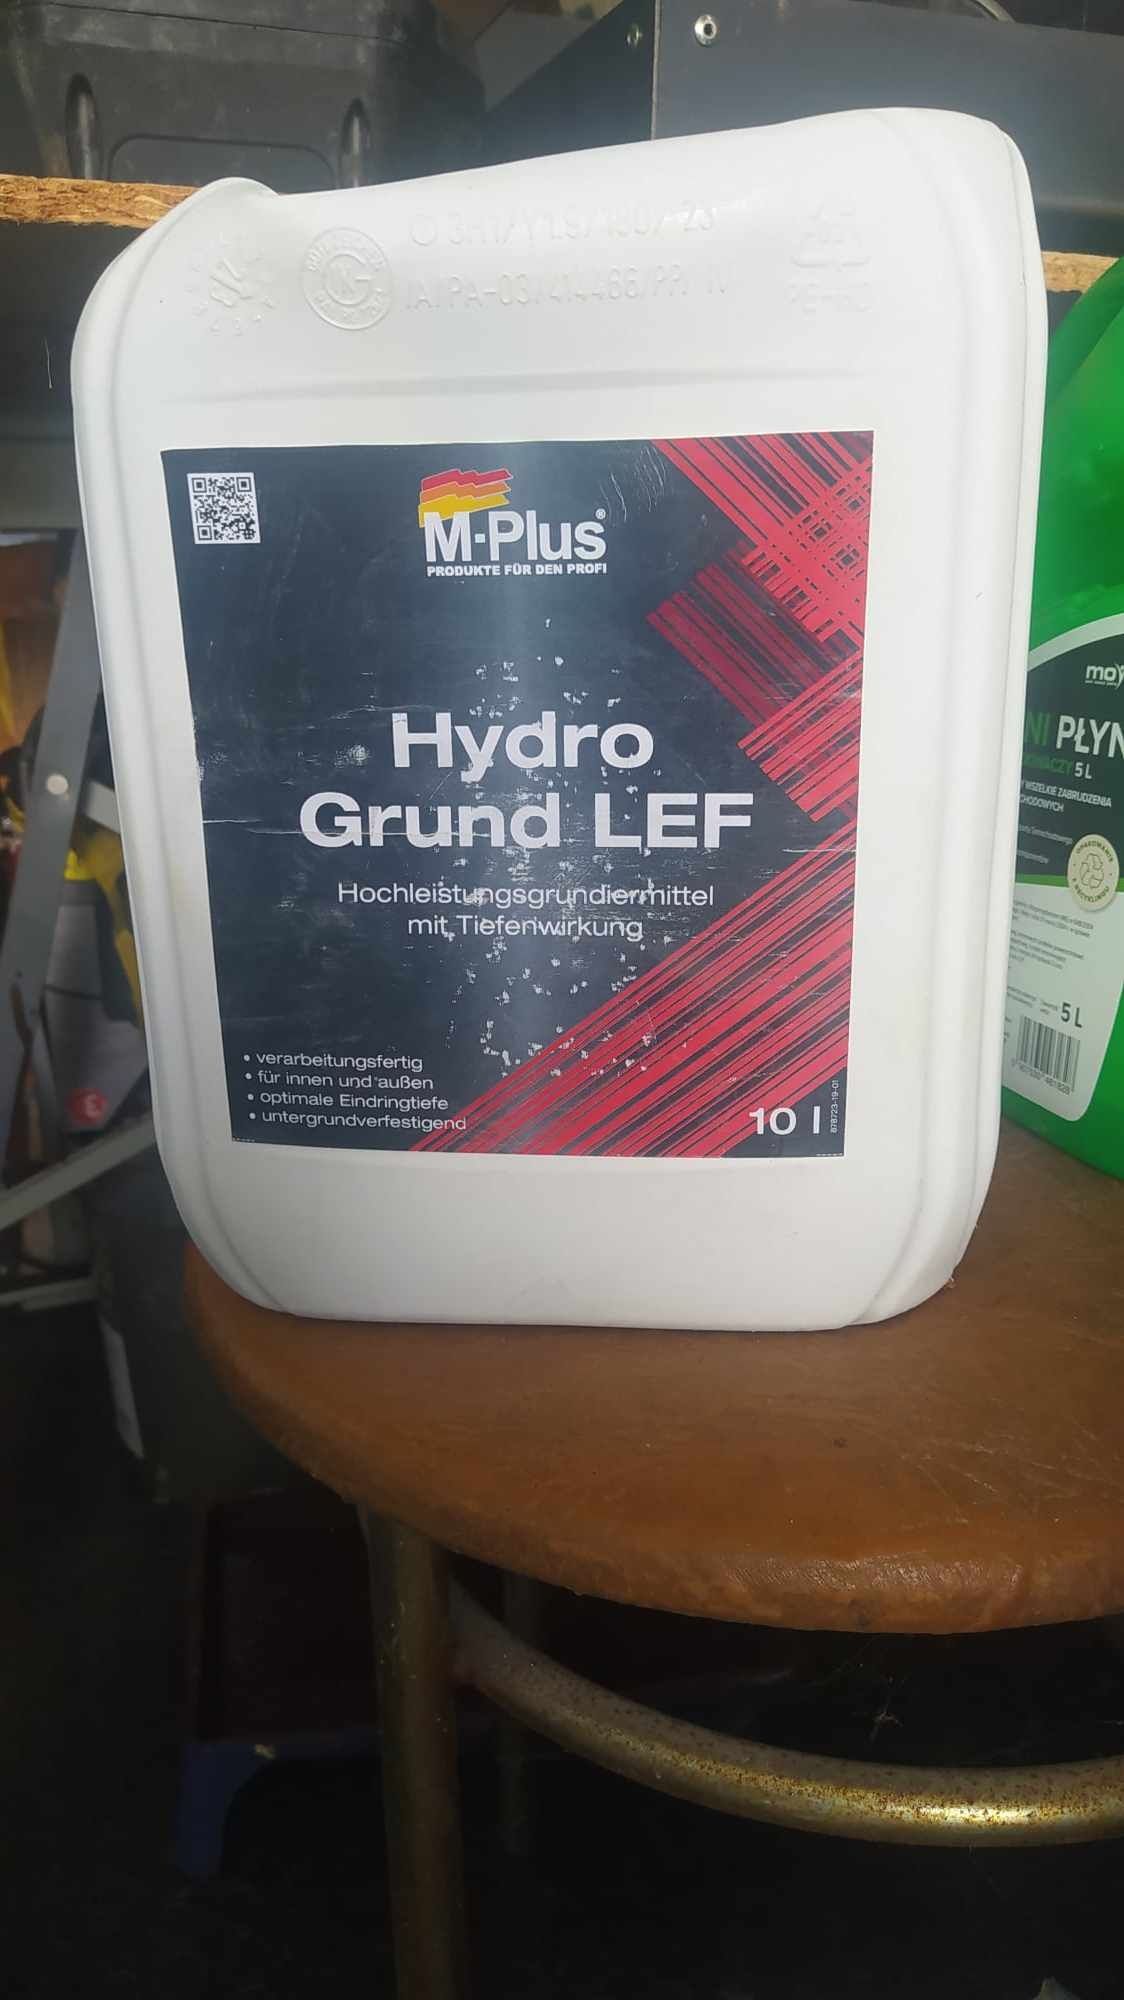 Grunt głęboko penetrujący M-Plus HydroGrund LEF 10l